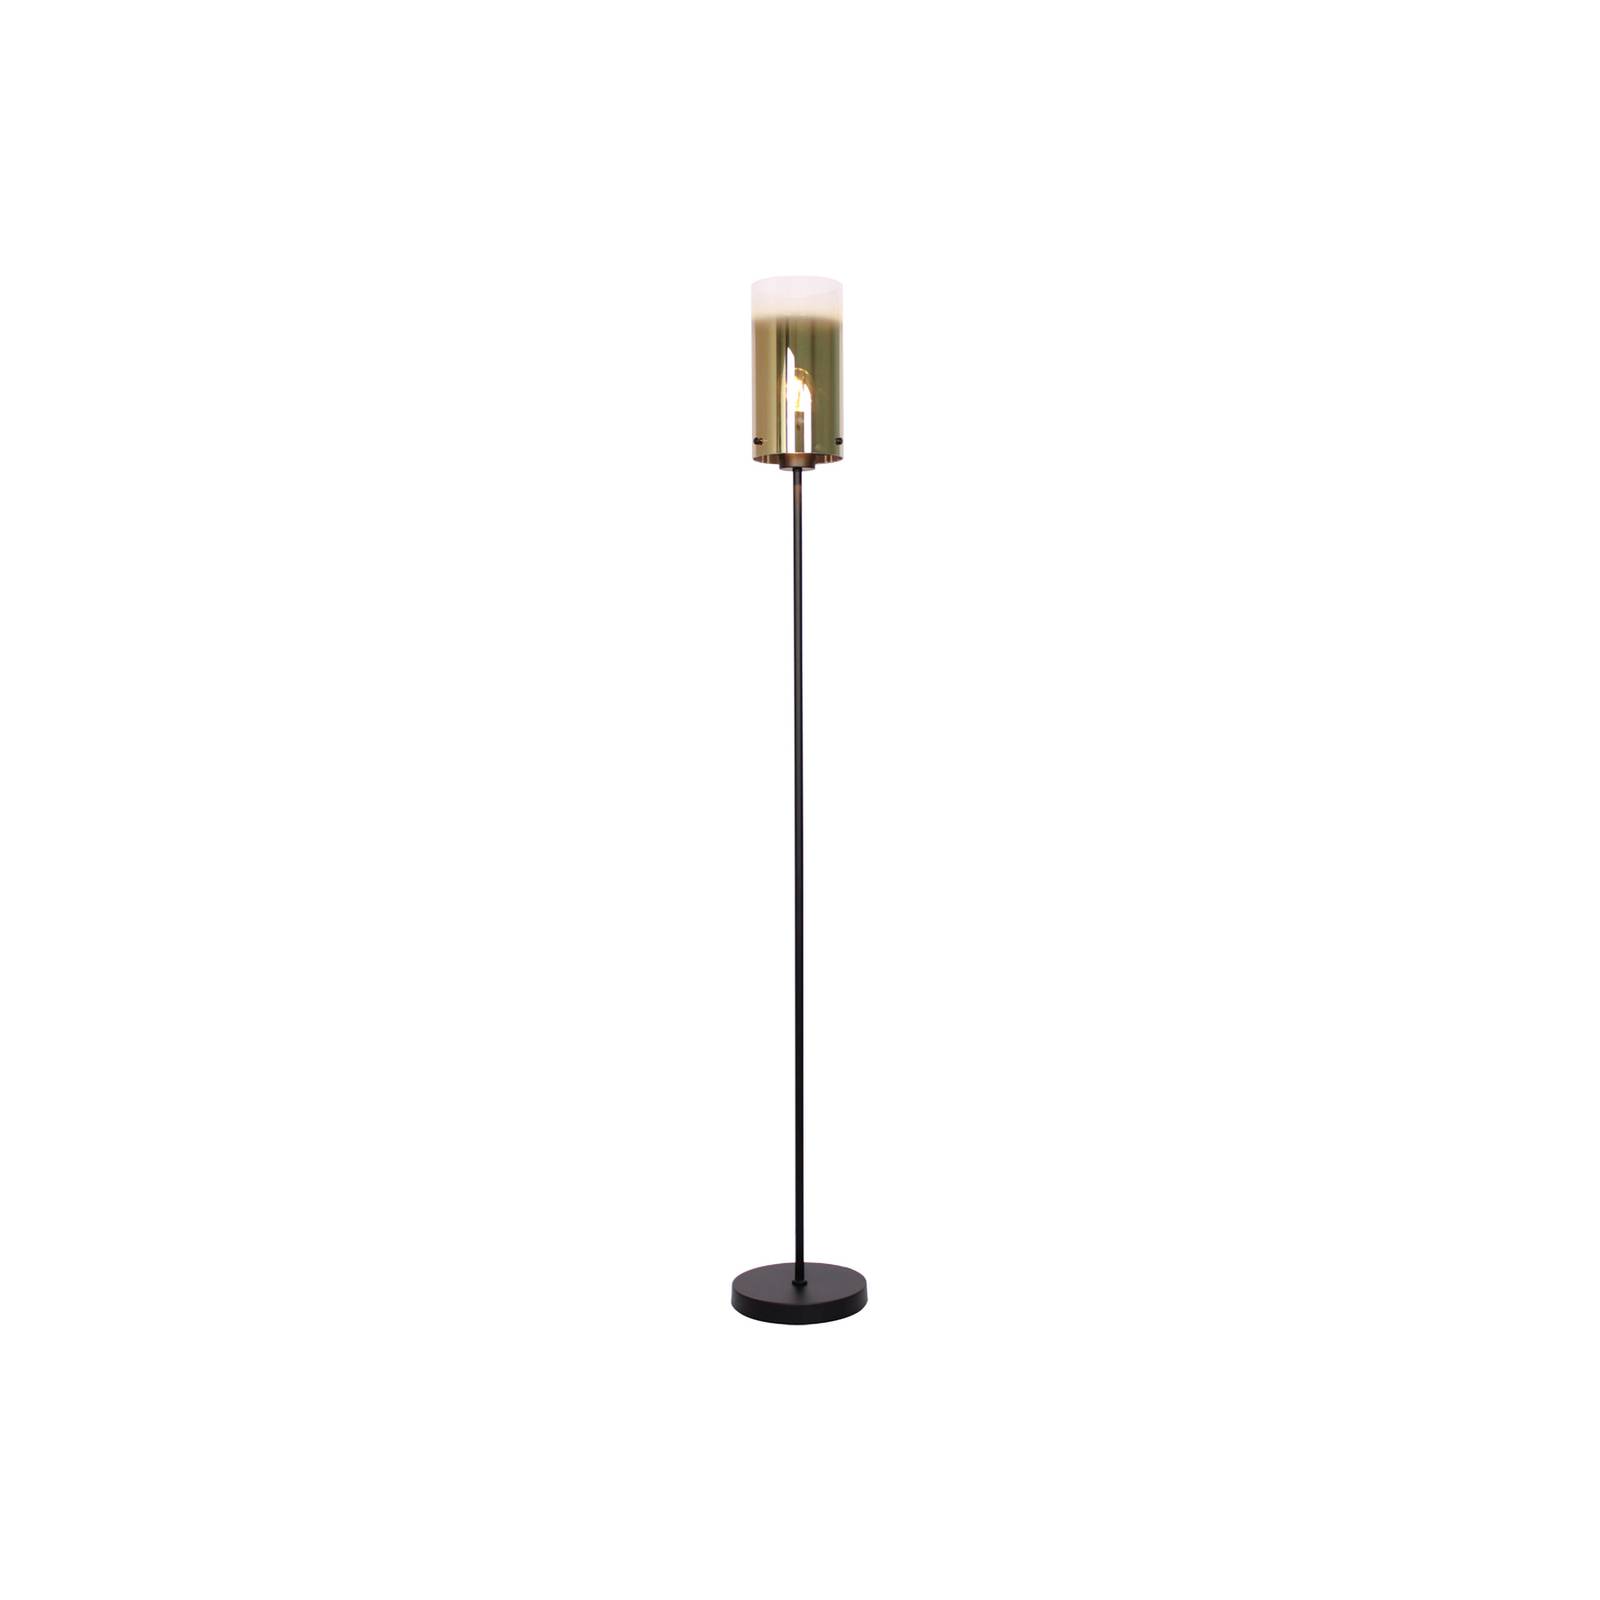 Freelight ventotto állólámpa, fekete/arany, magasság 165 cm, fém/üveg